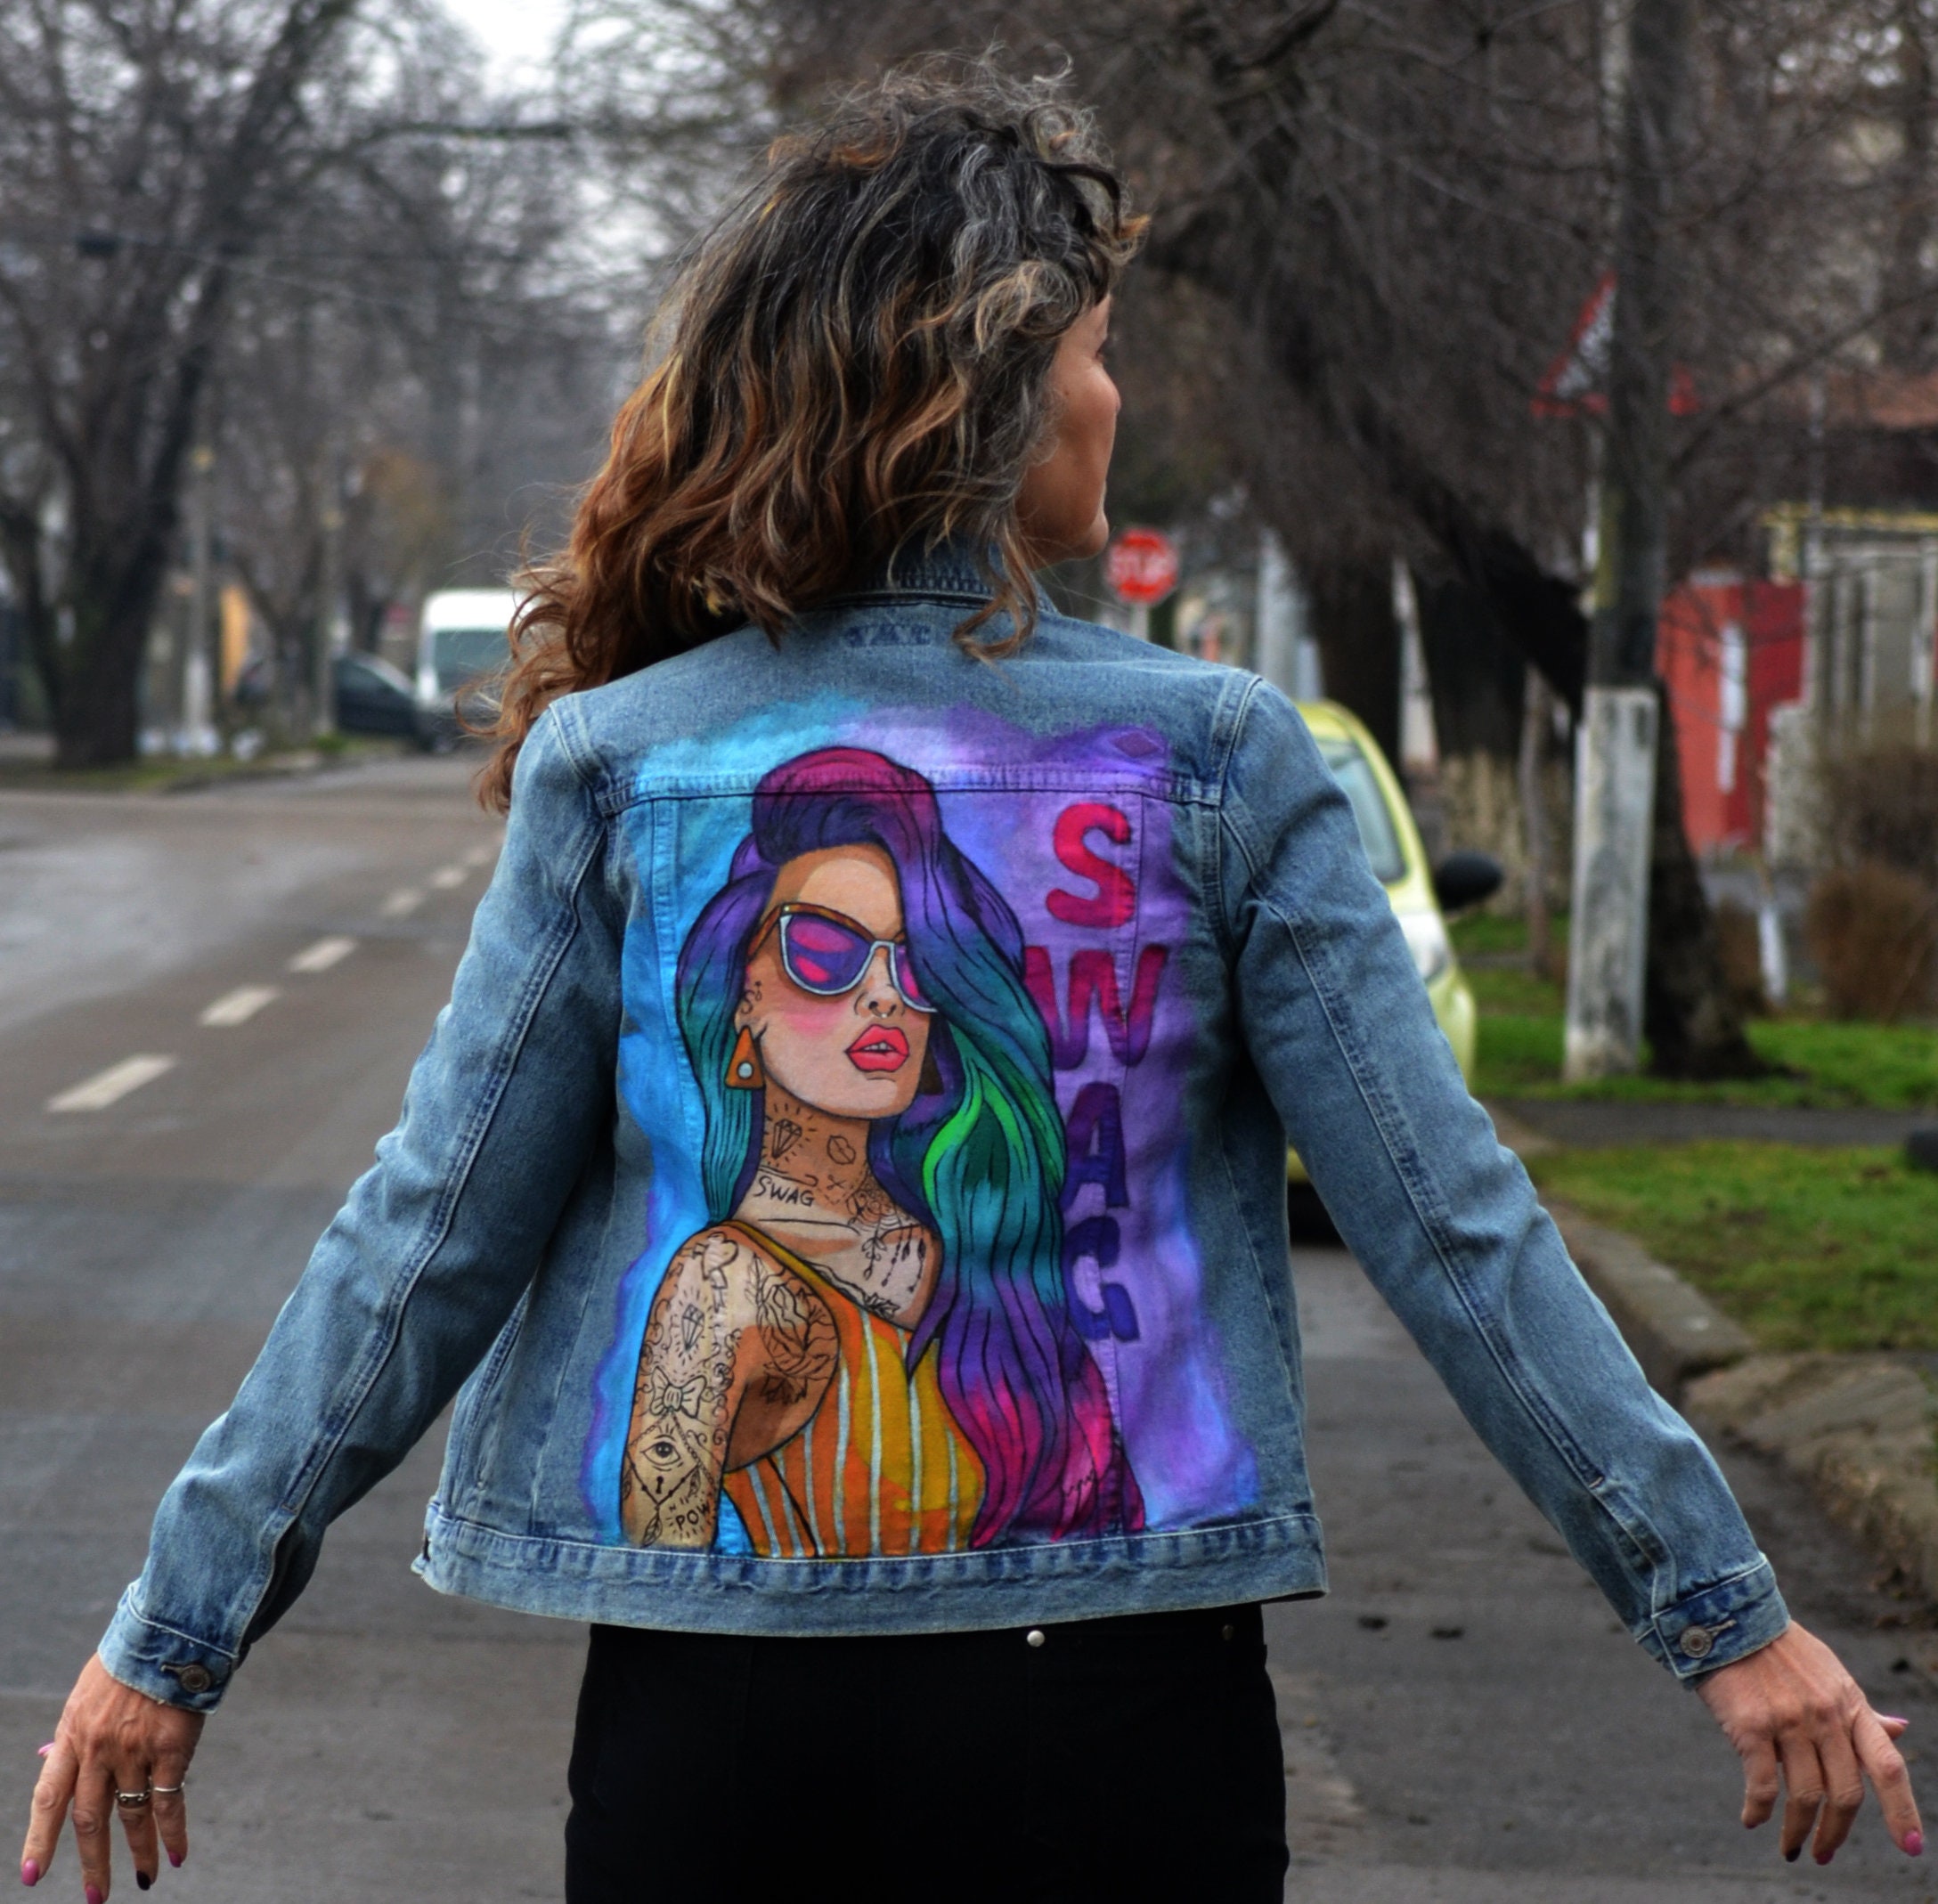 Buy Custom Hand Painted Denim Jacket swag Artwork Online in India